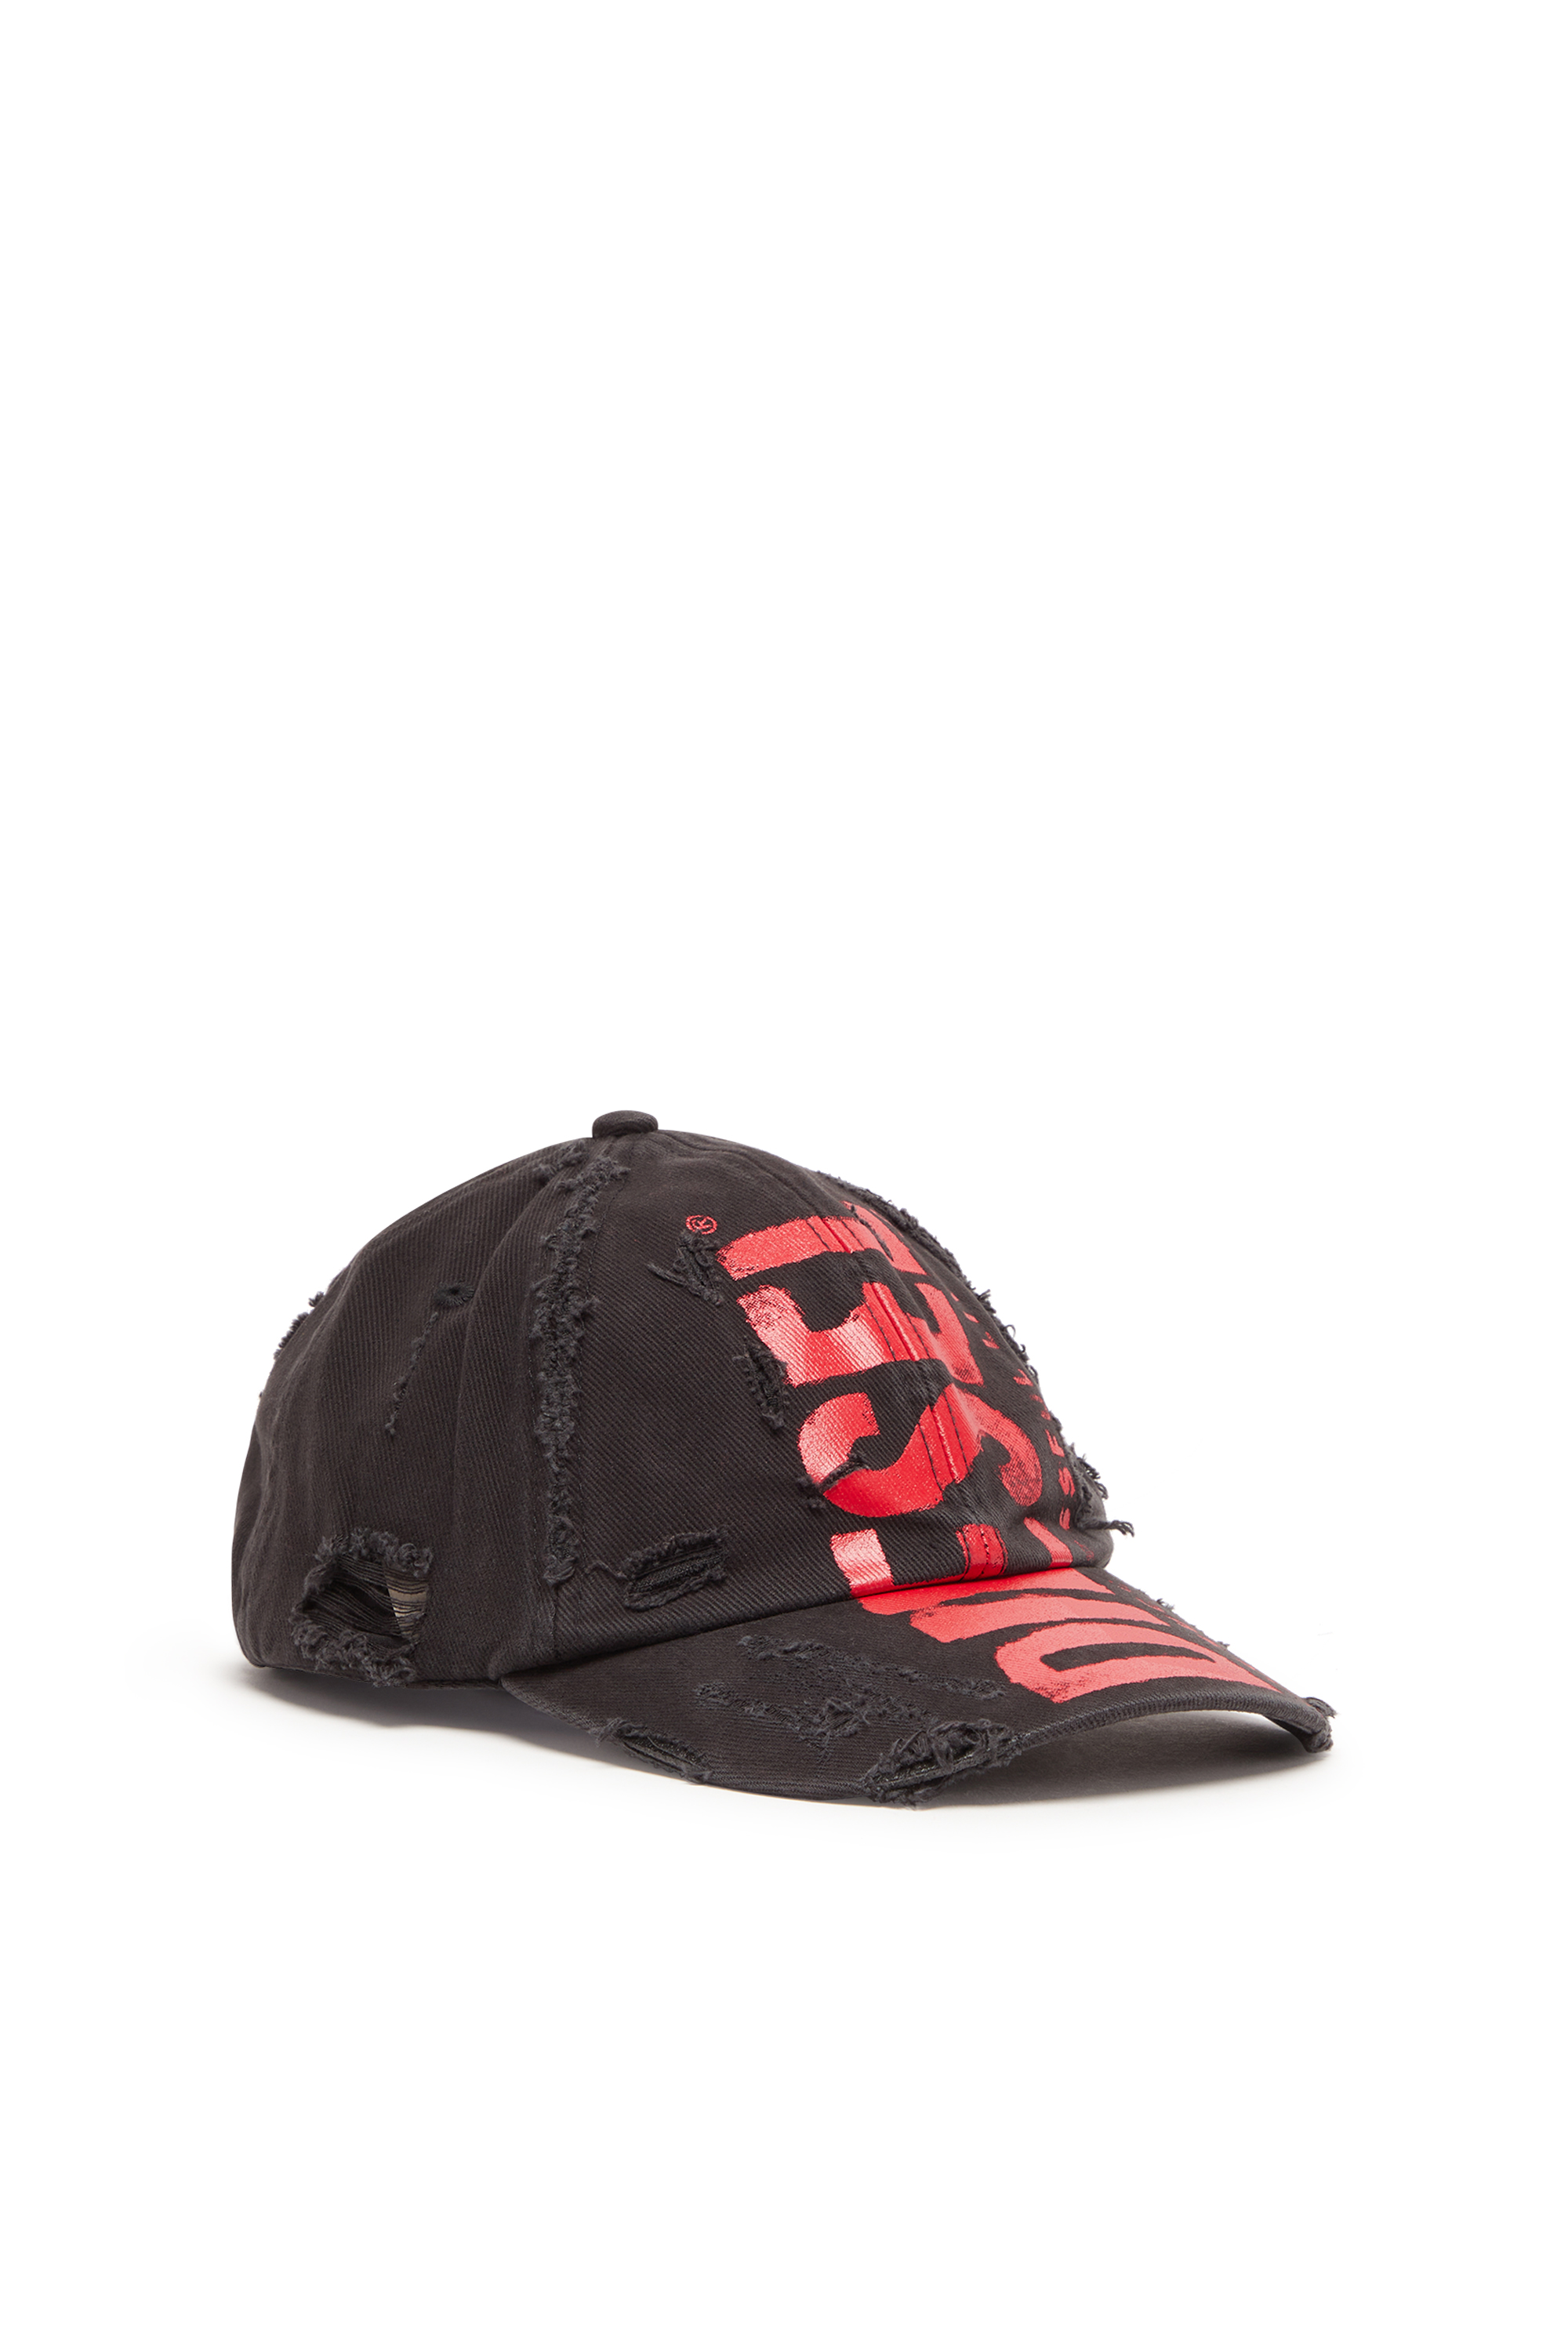 Diesel - Berretto da baseball con scritta Diesel - Cappelli - Unisex - Multicolor